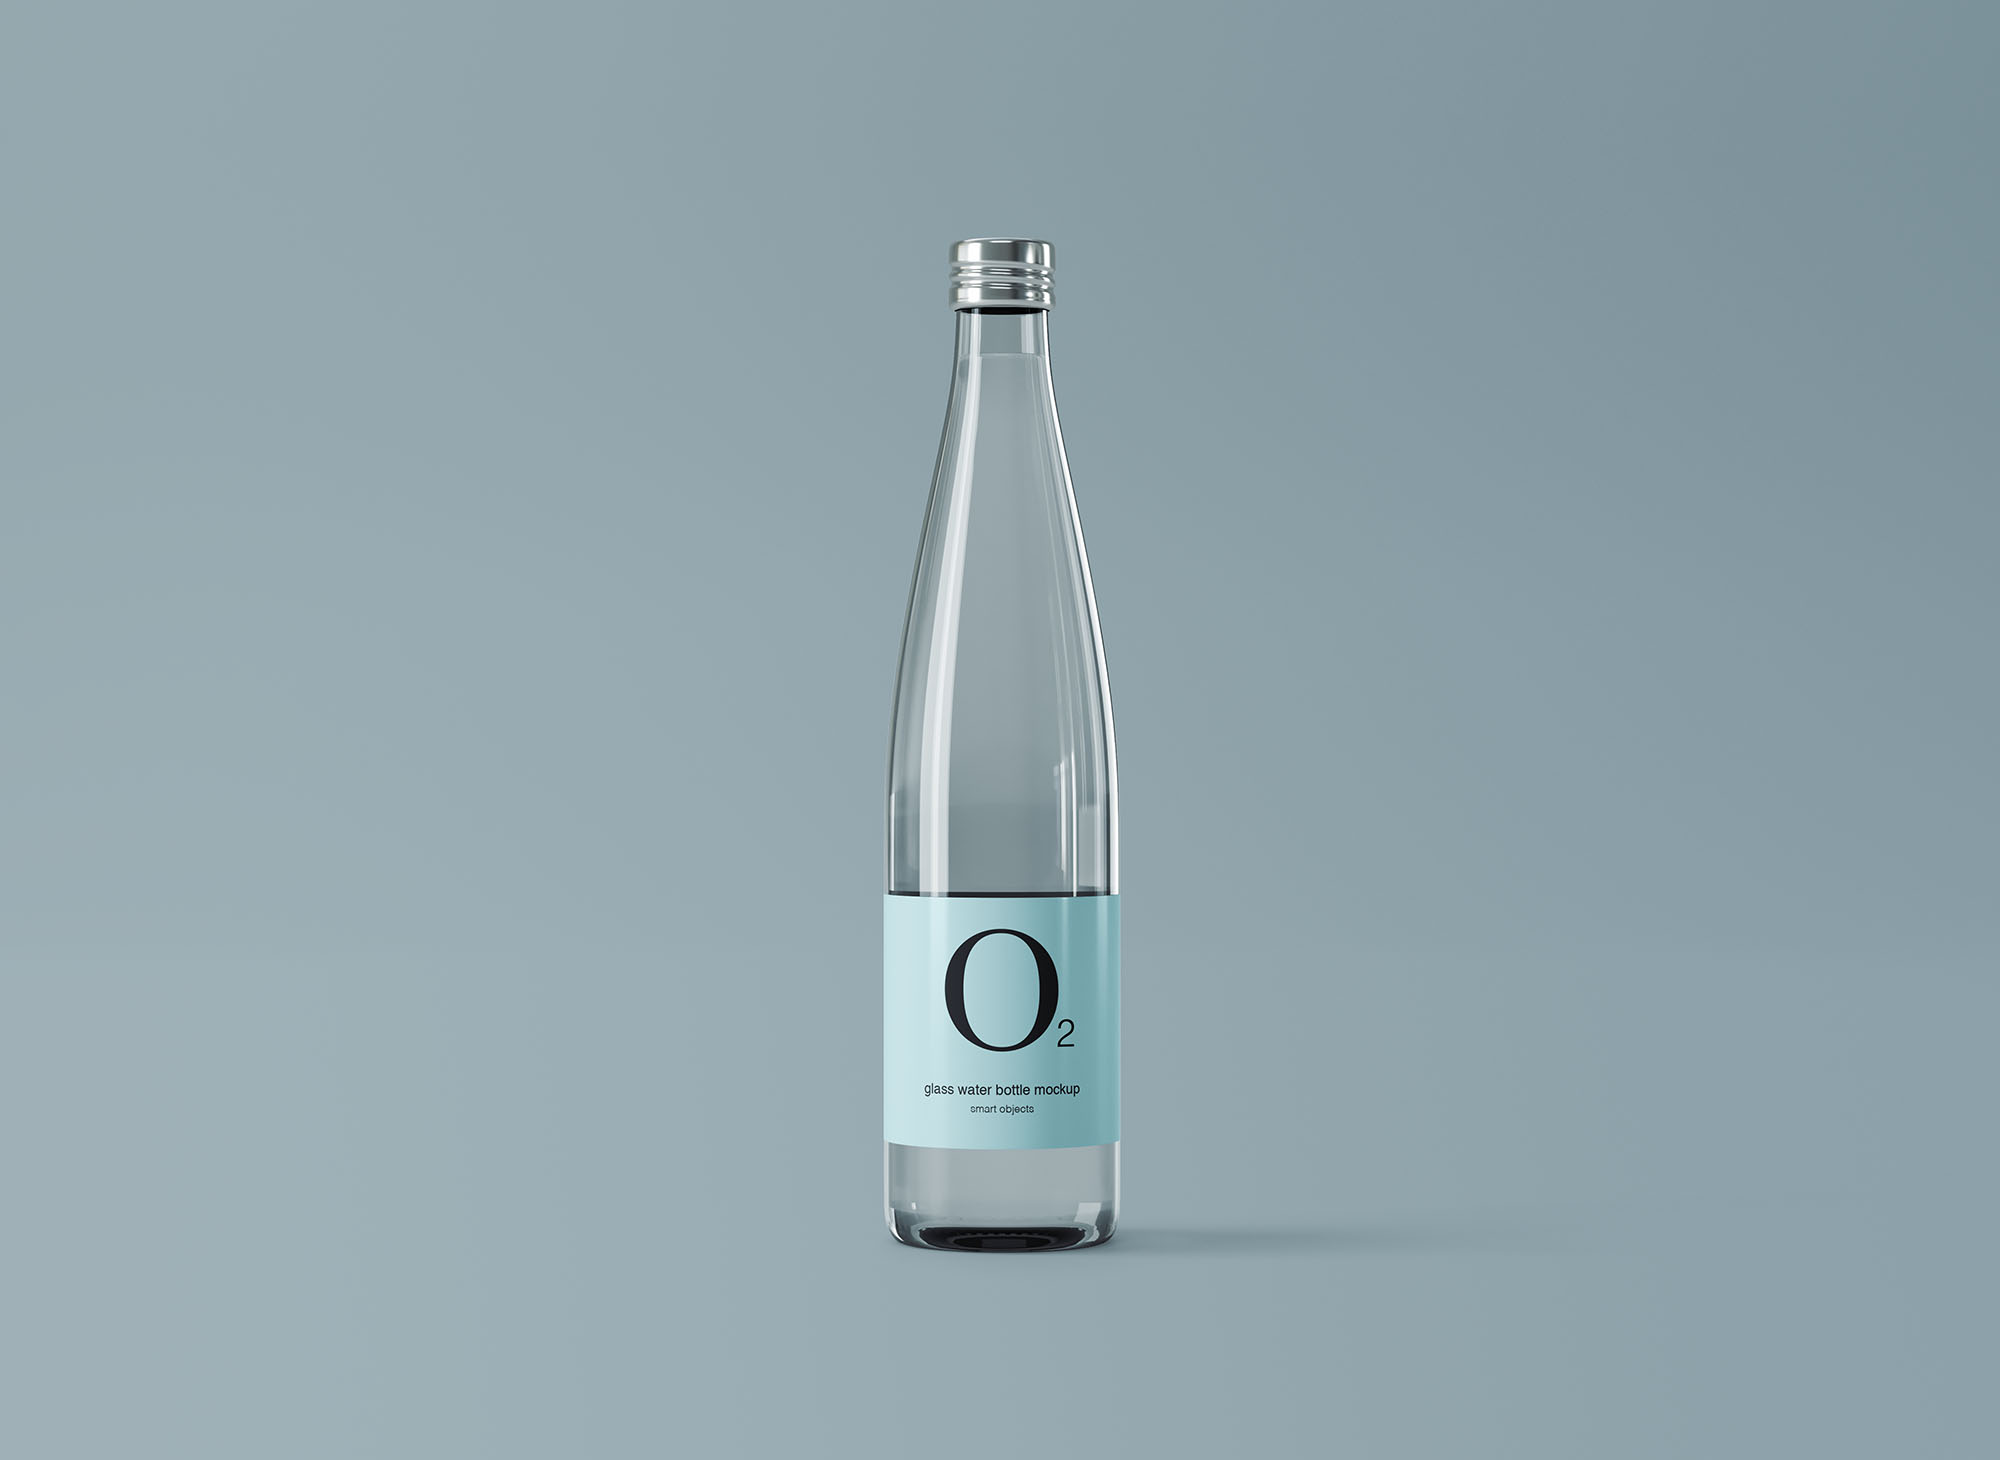 极简设计风格玻璃纯净水矿泉水瓶外观设计图普贤居精选 Minimal Glass Water Bottle Mockup插图